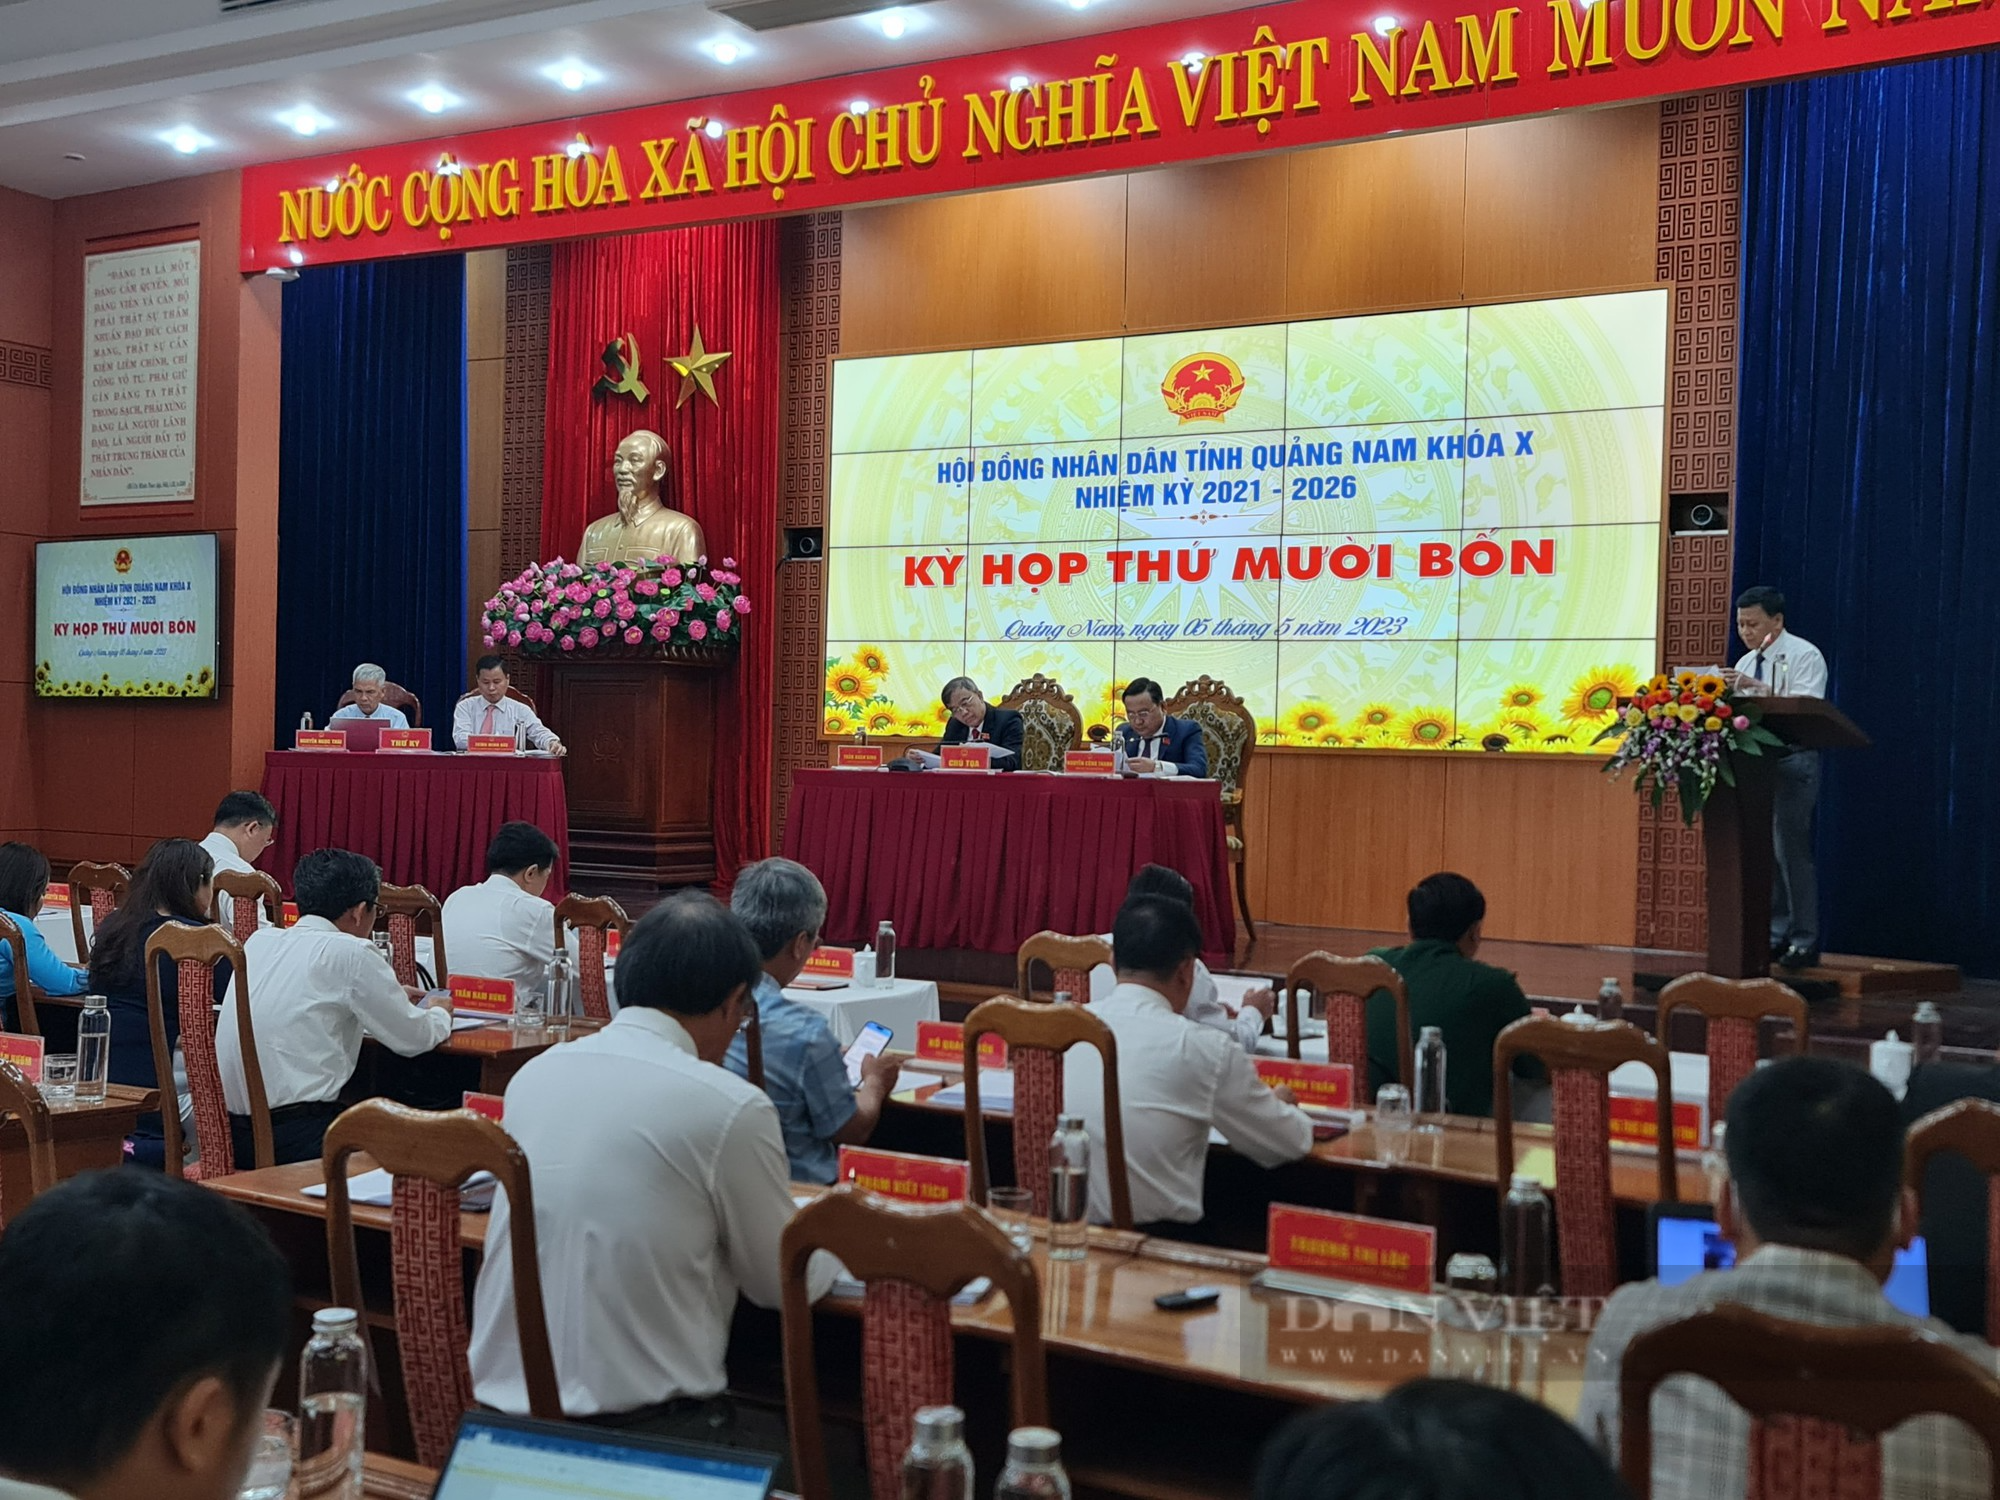 Bí thư Tỉnh ủy, Chủ tịch HĐND tỉnh Quảng Nam bận công tác, kỳ họp thứ 14 do hai Phó chủ tịch chủ trì - Ảnh 2.